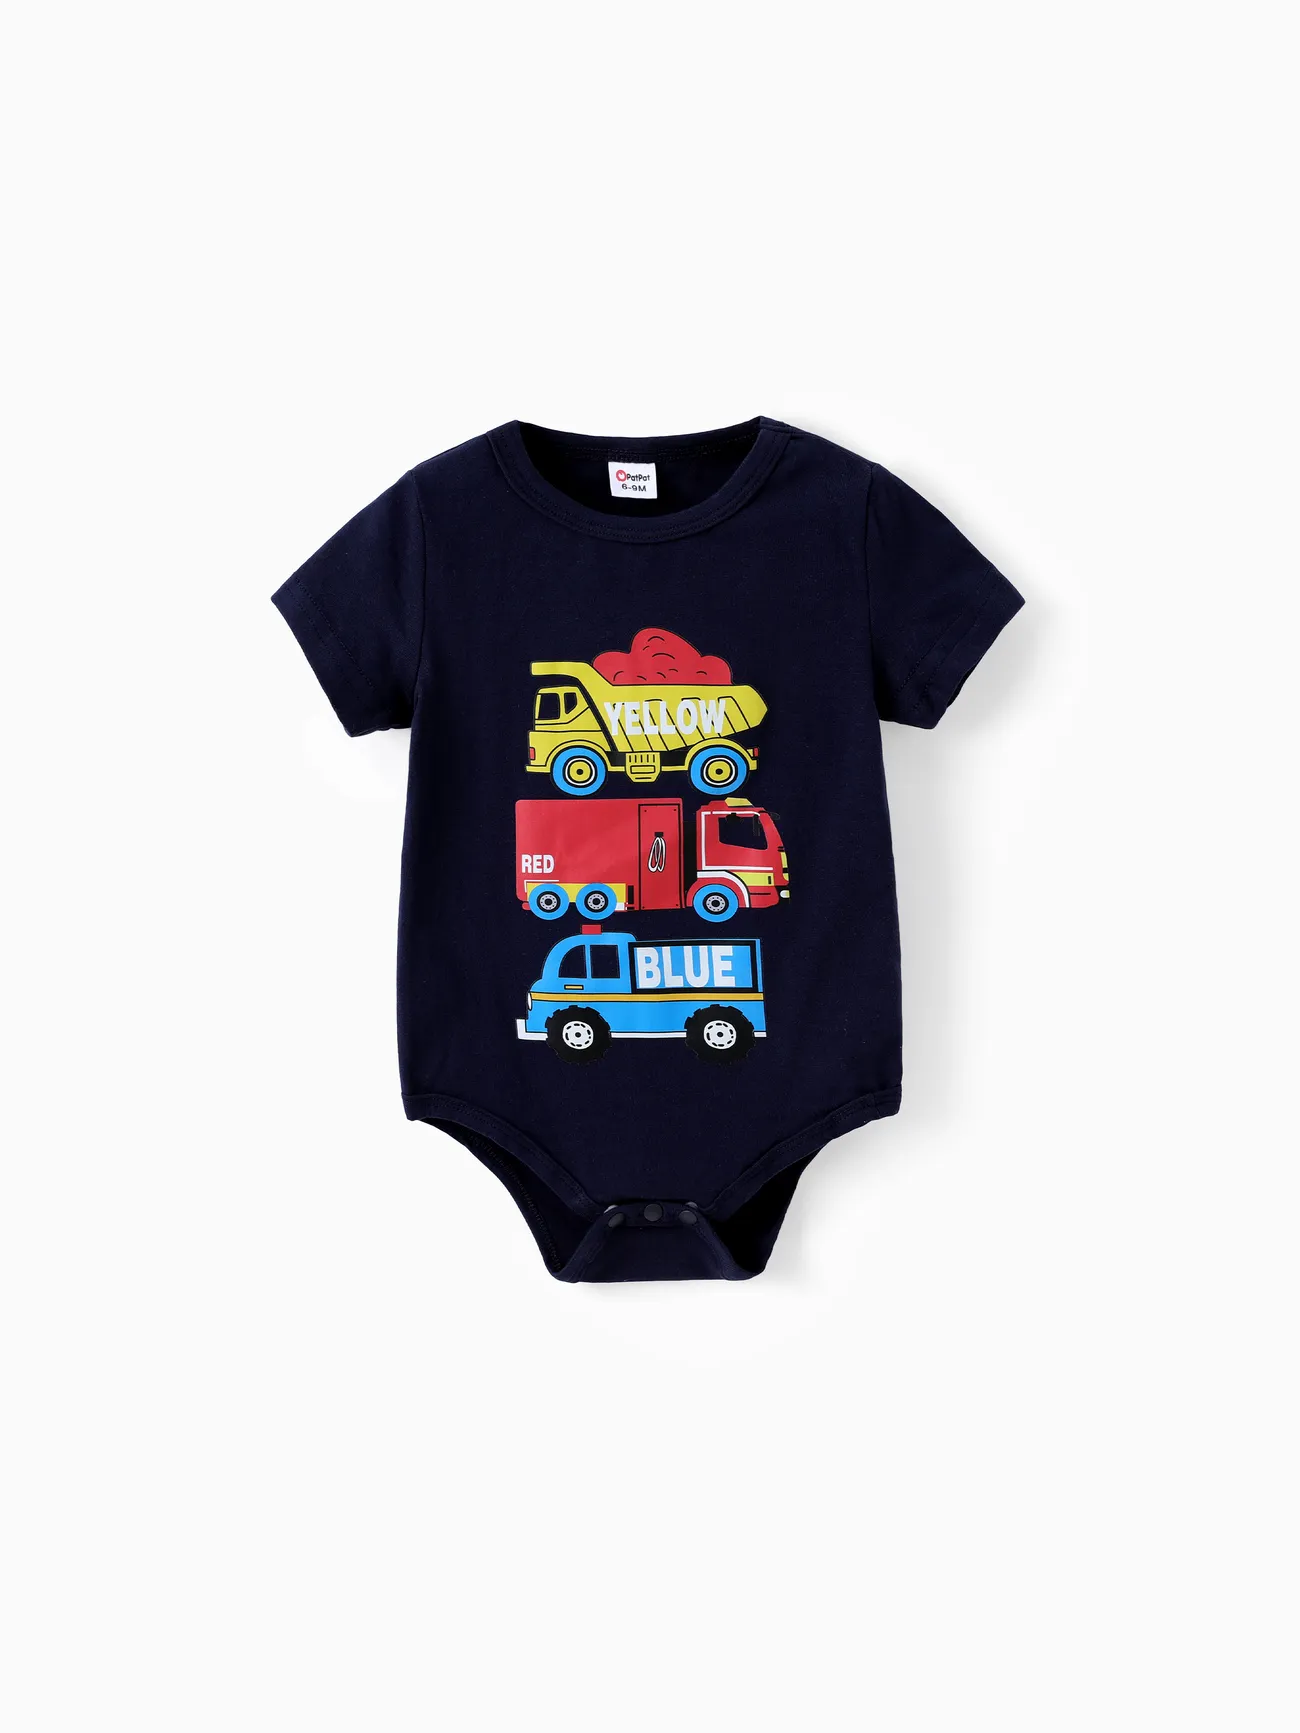 Baby Boy 2pcs Childlike Vehicle Print Tee and Shorts Set Dark Blue big image 1